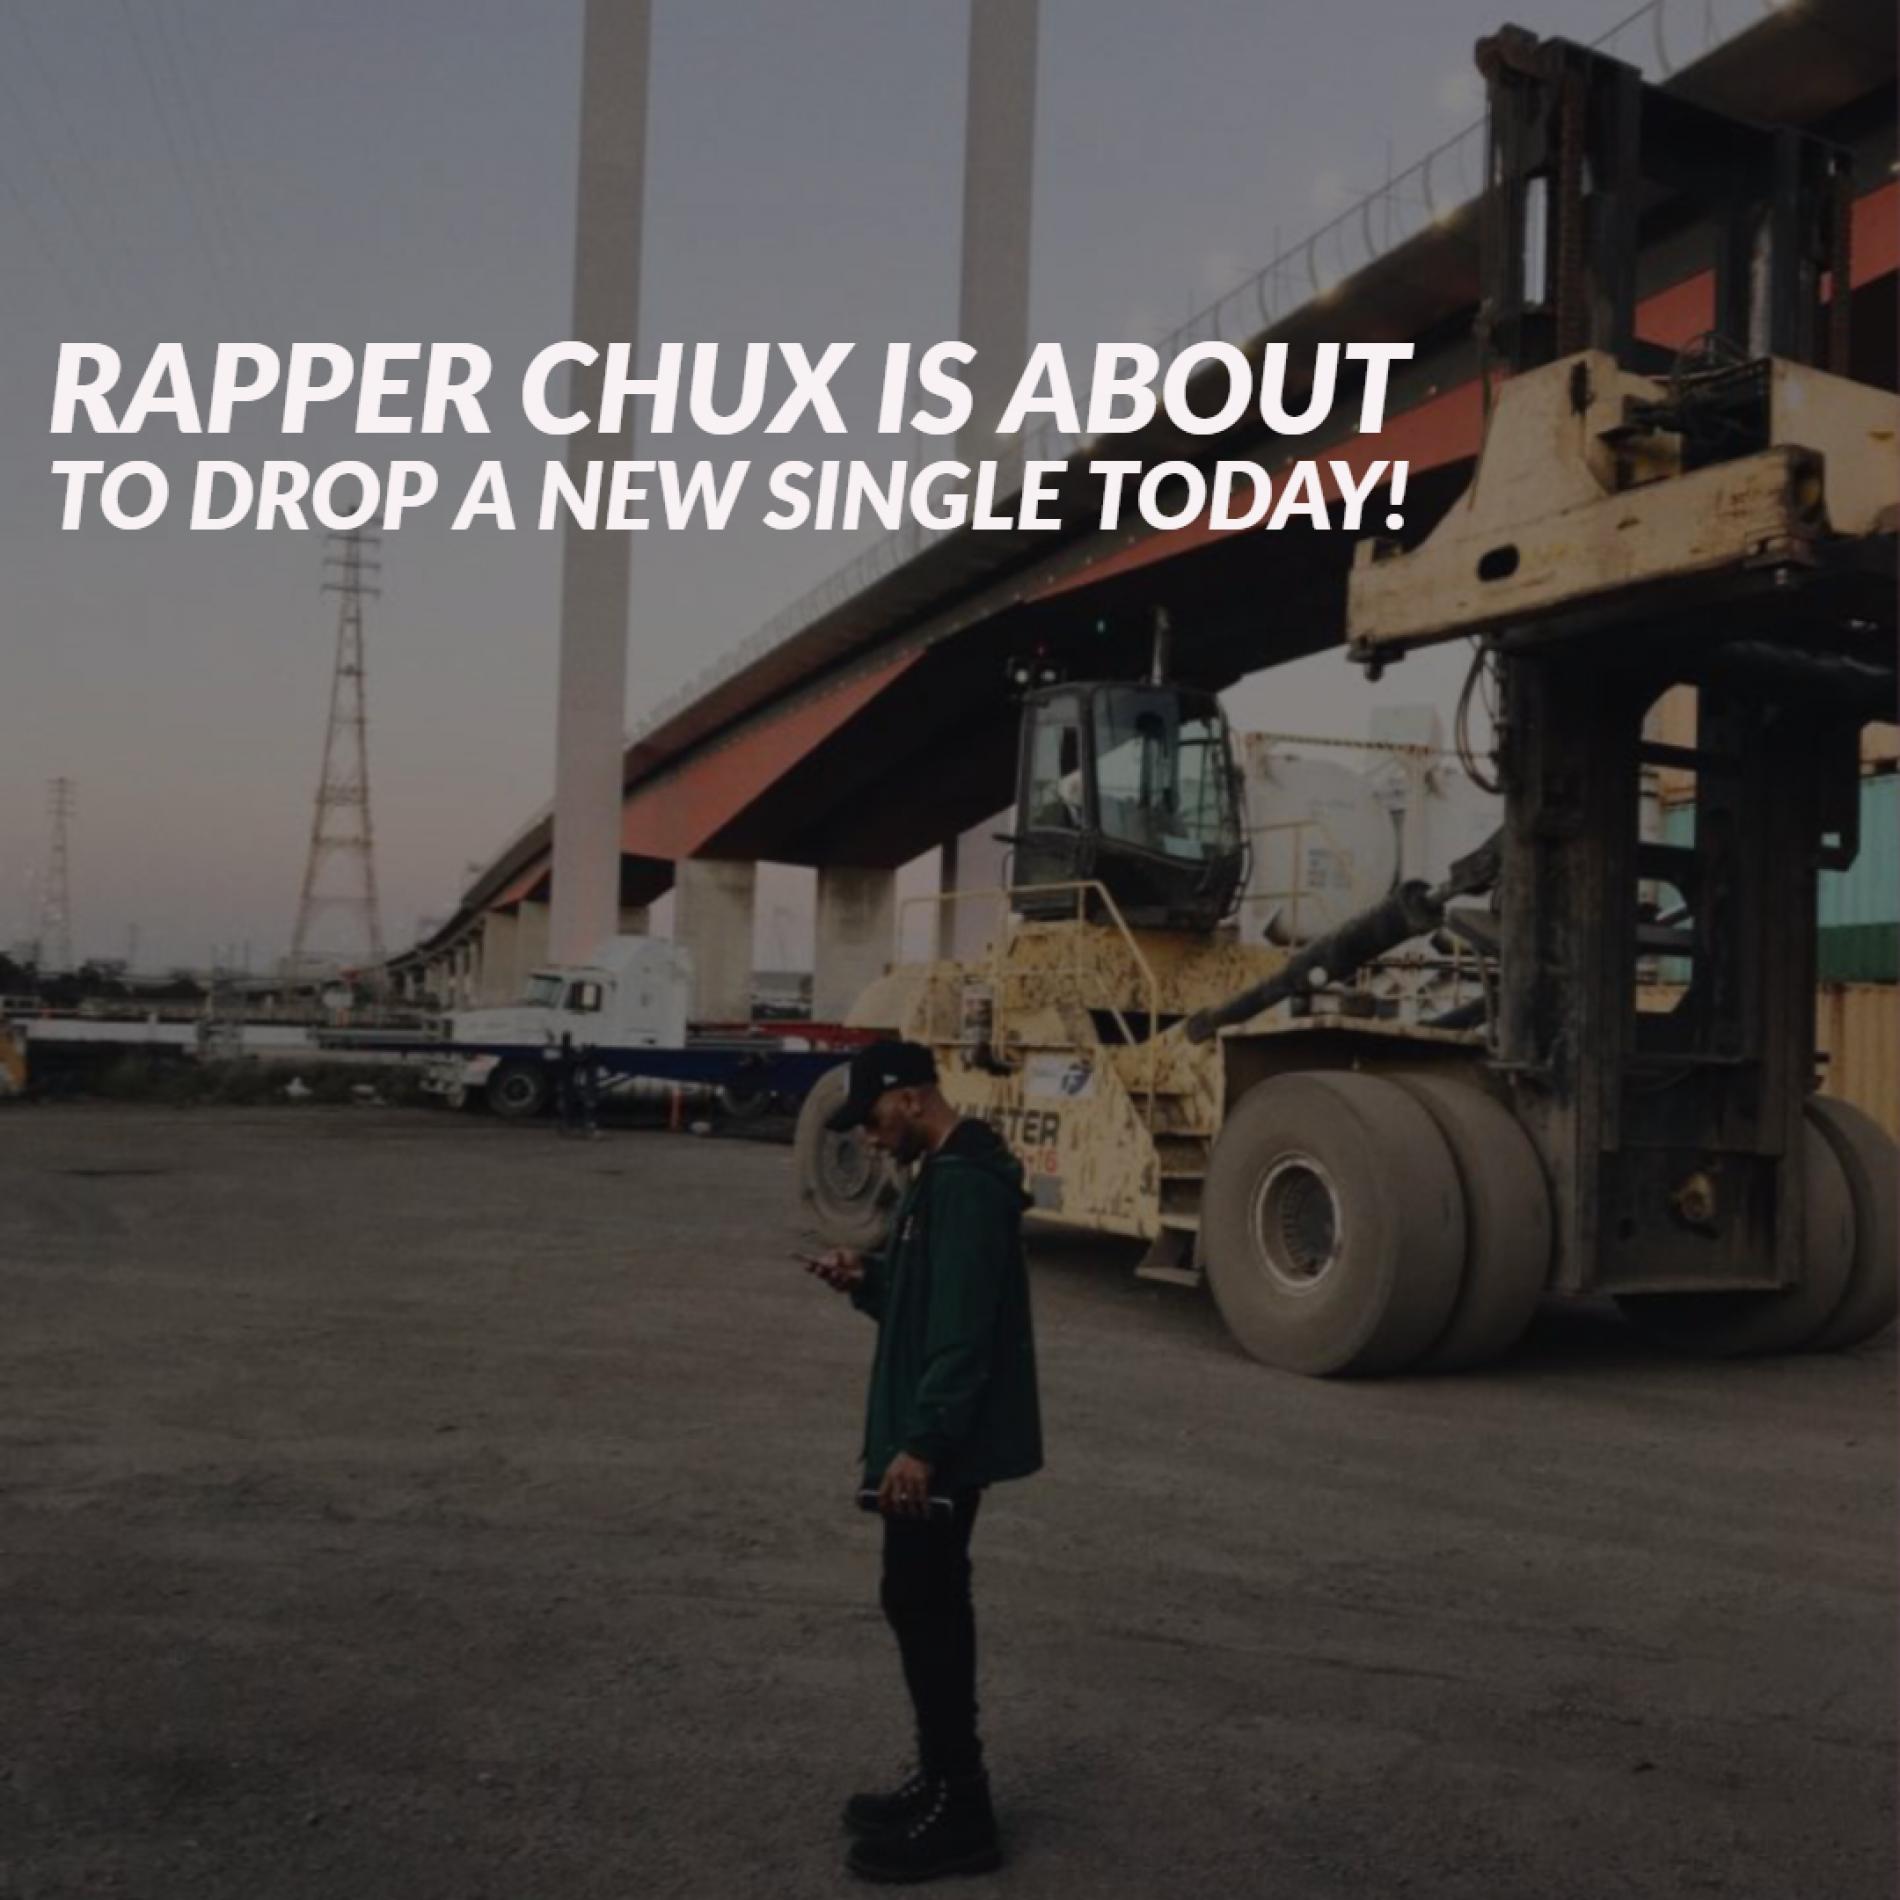 Rapper Chux Has A Hot Drop Today!